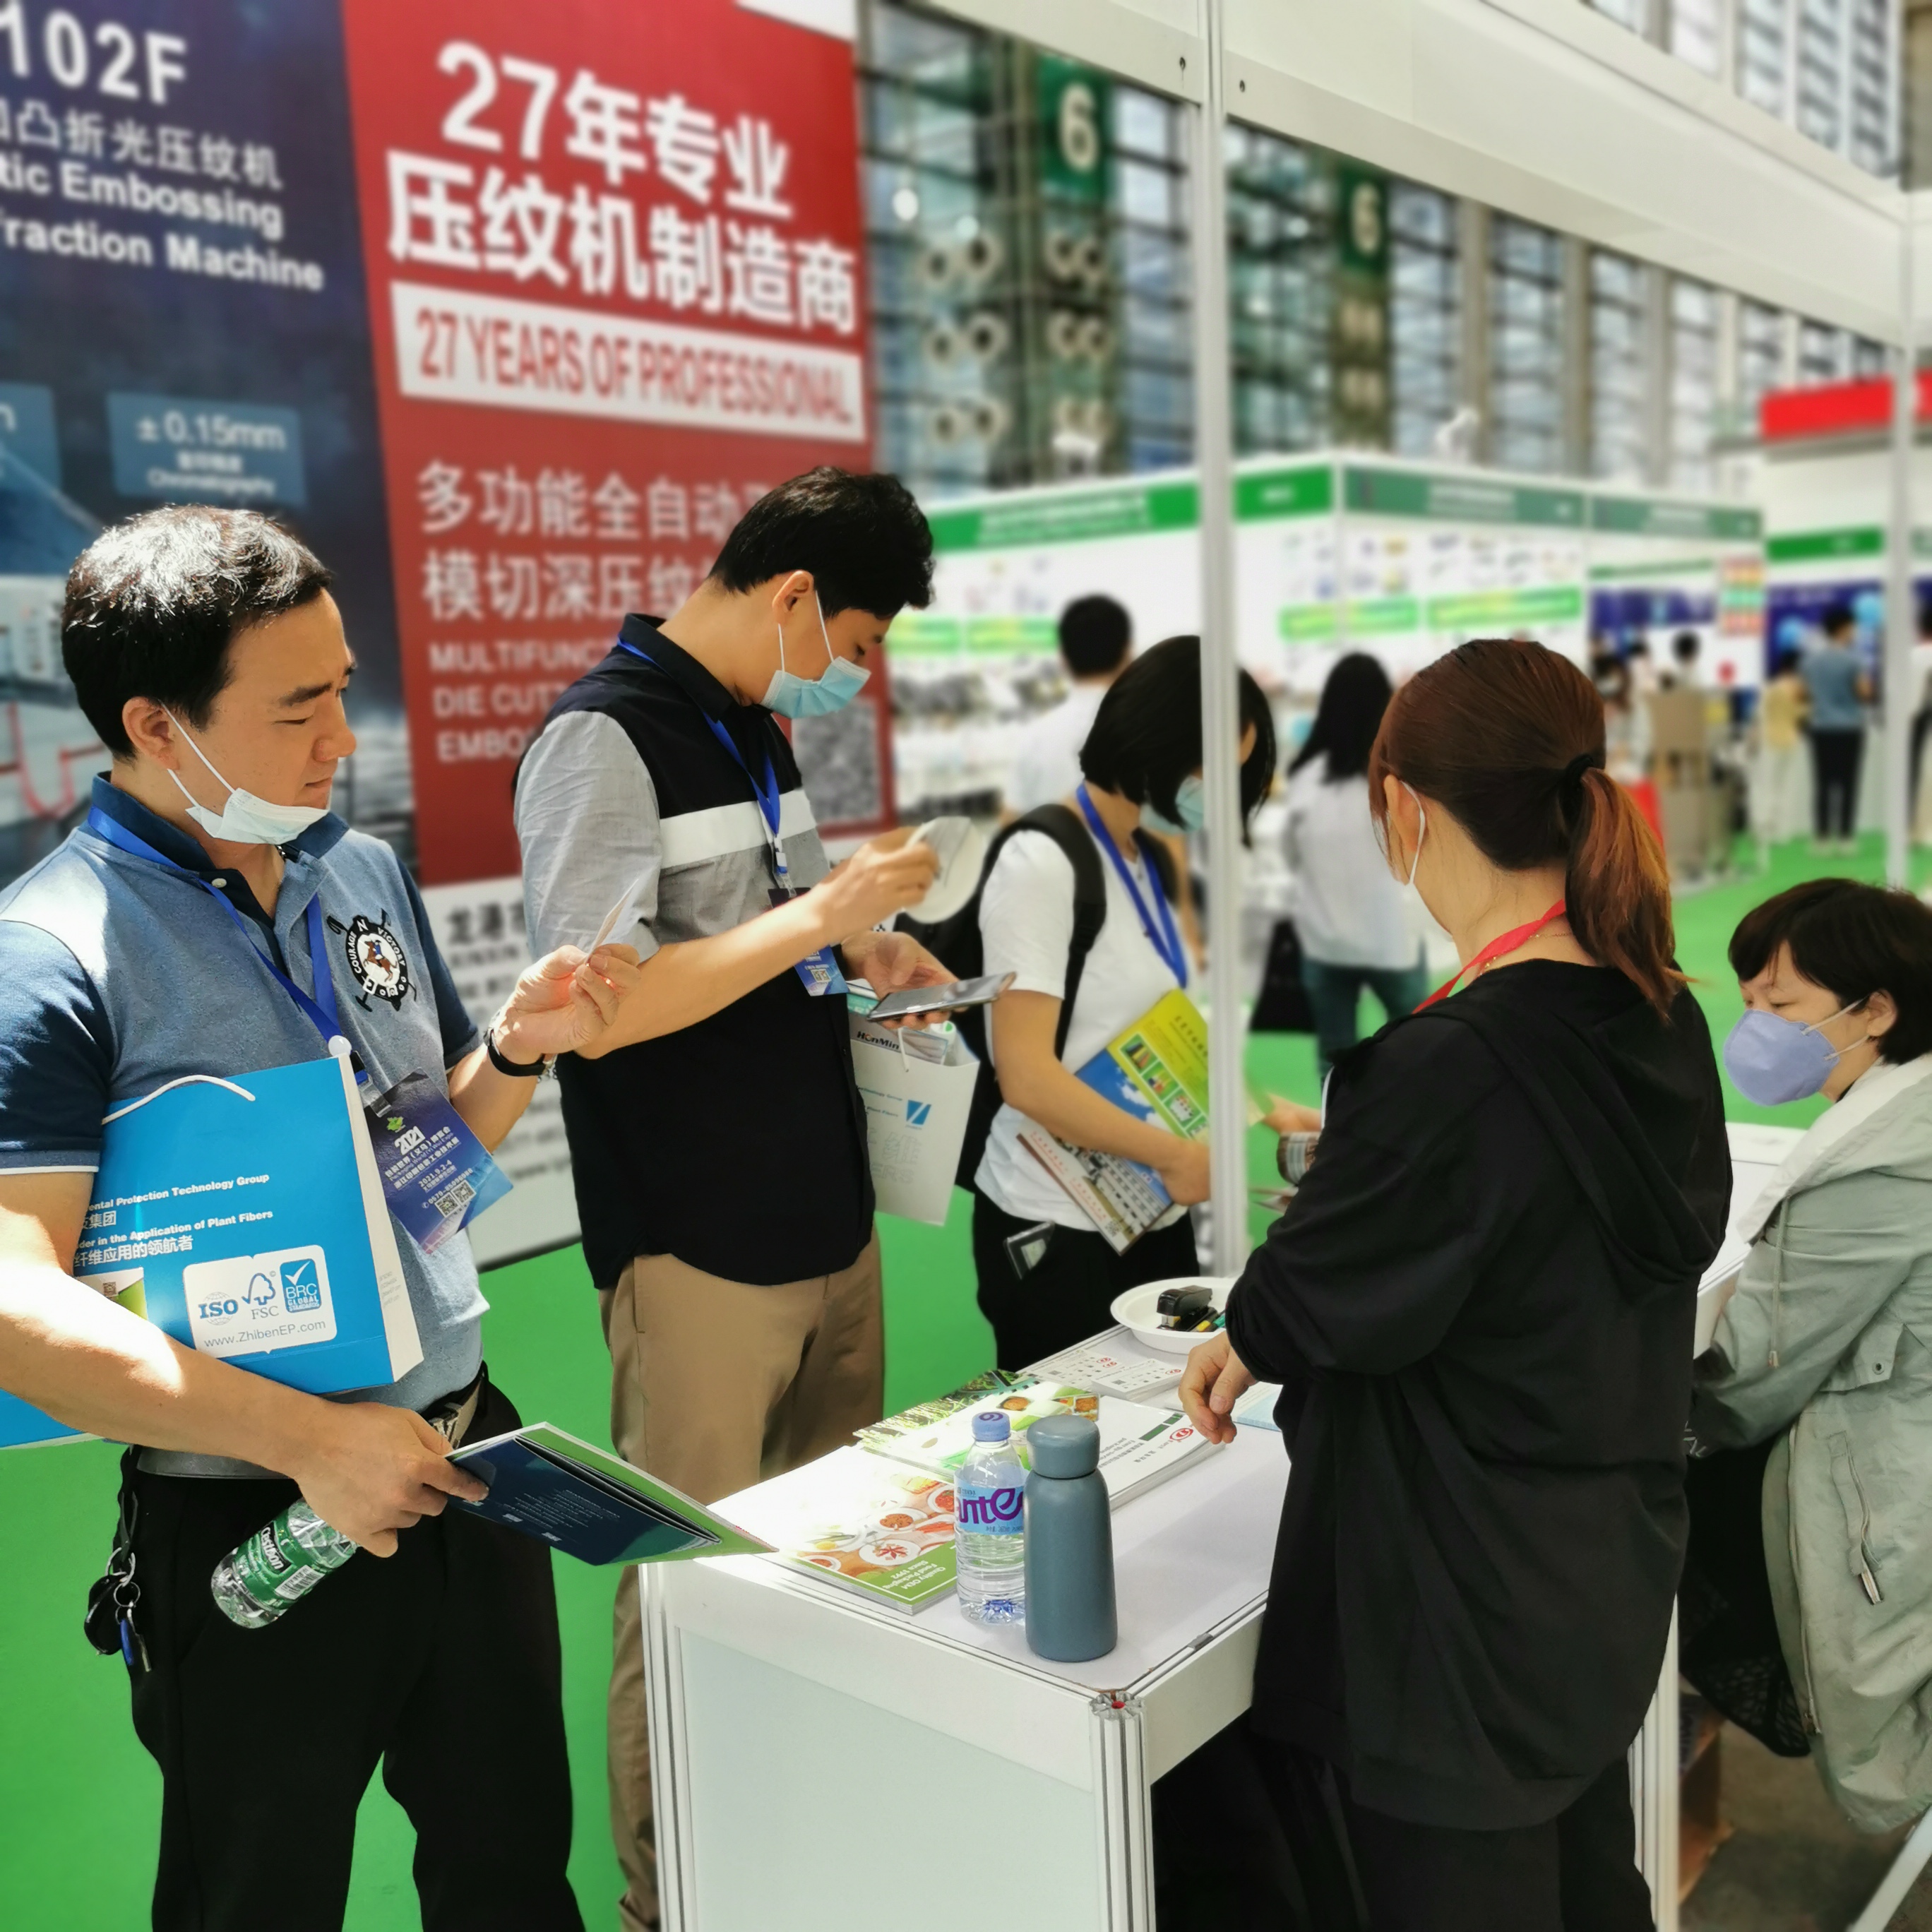 Η Άπω Ανατολή παρευρεθεί στο Packaging World(Shen Zhen) Expo